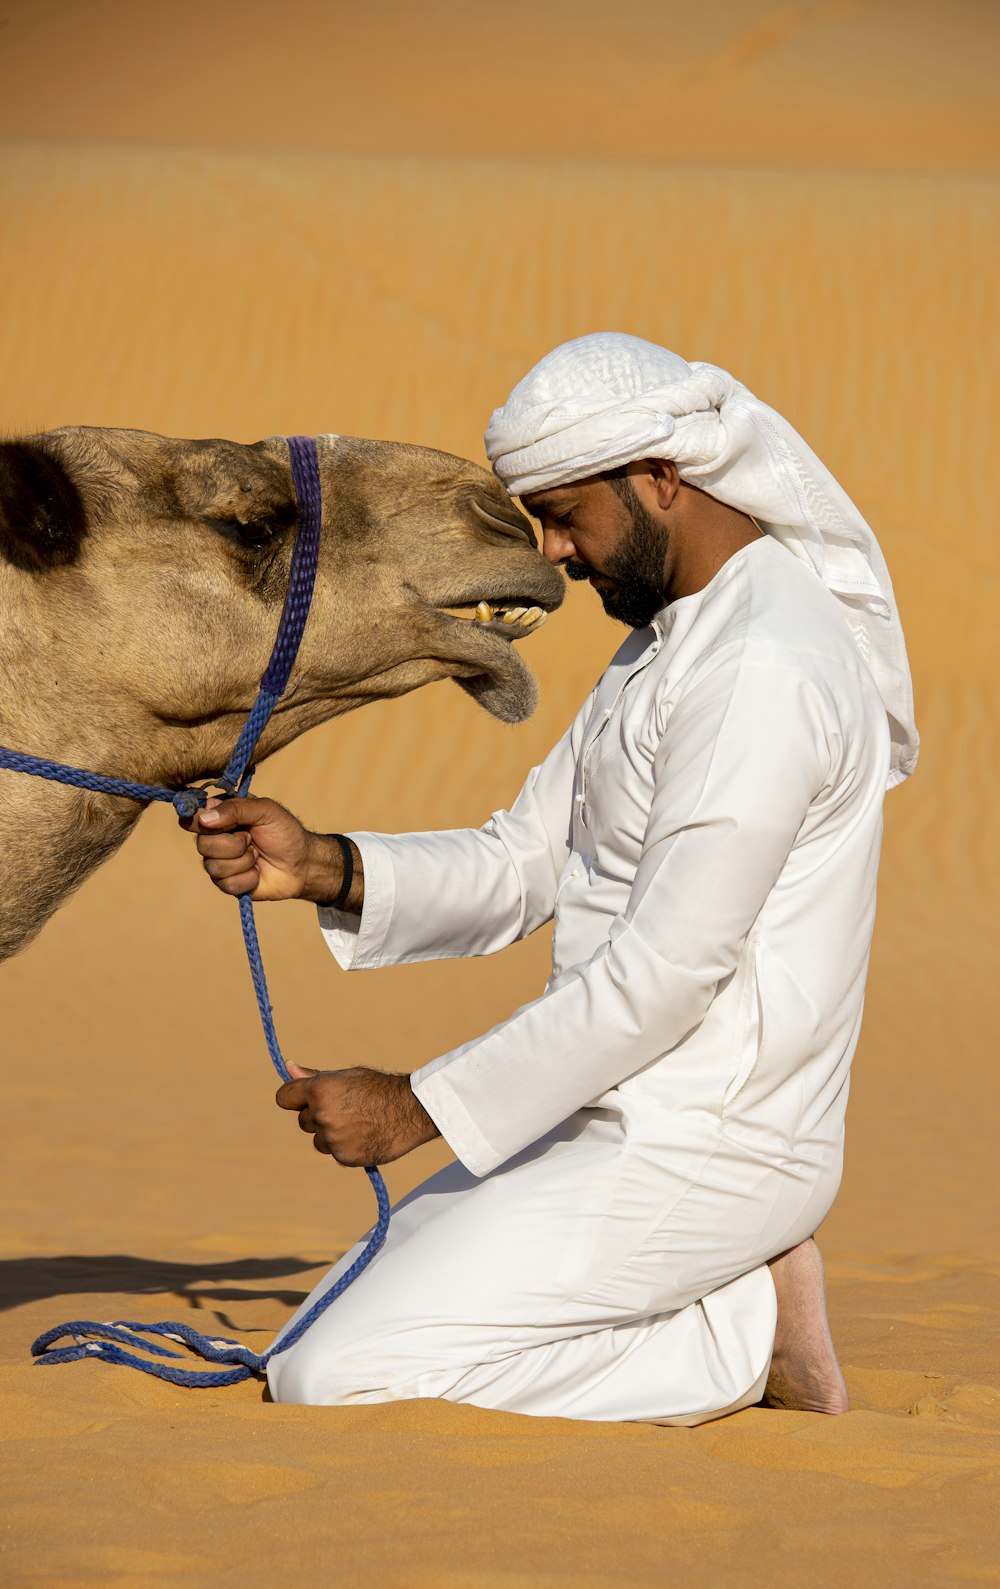 Un hombre con un traje blanco está acariciando a un camello